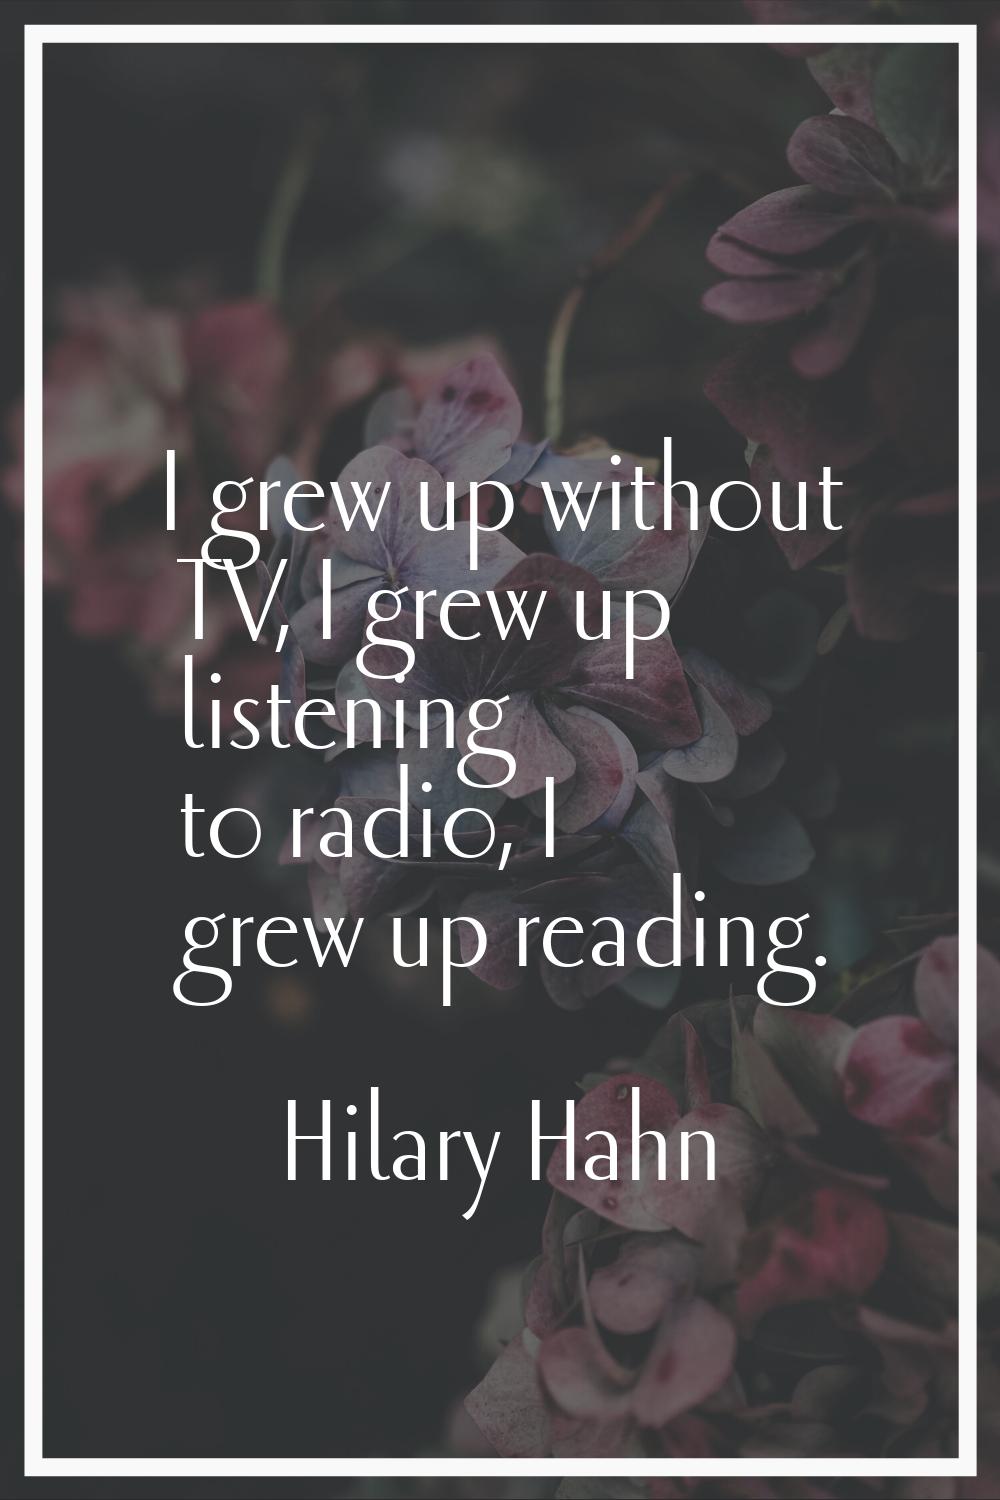 I grew up without TV, I grew up listening to radio, I grew up reading.